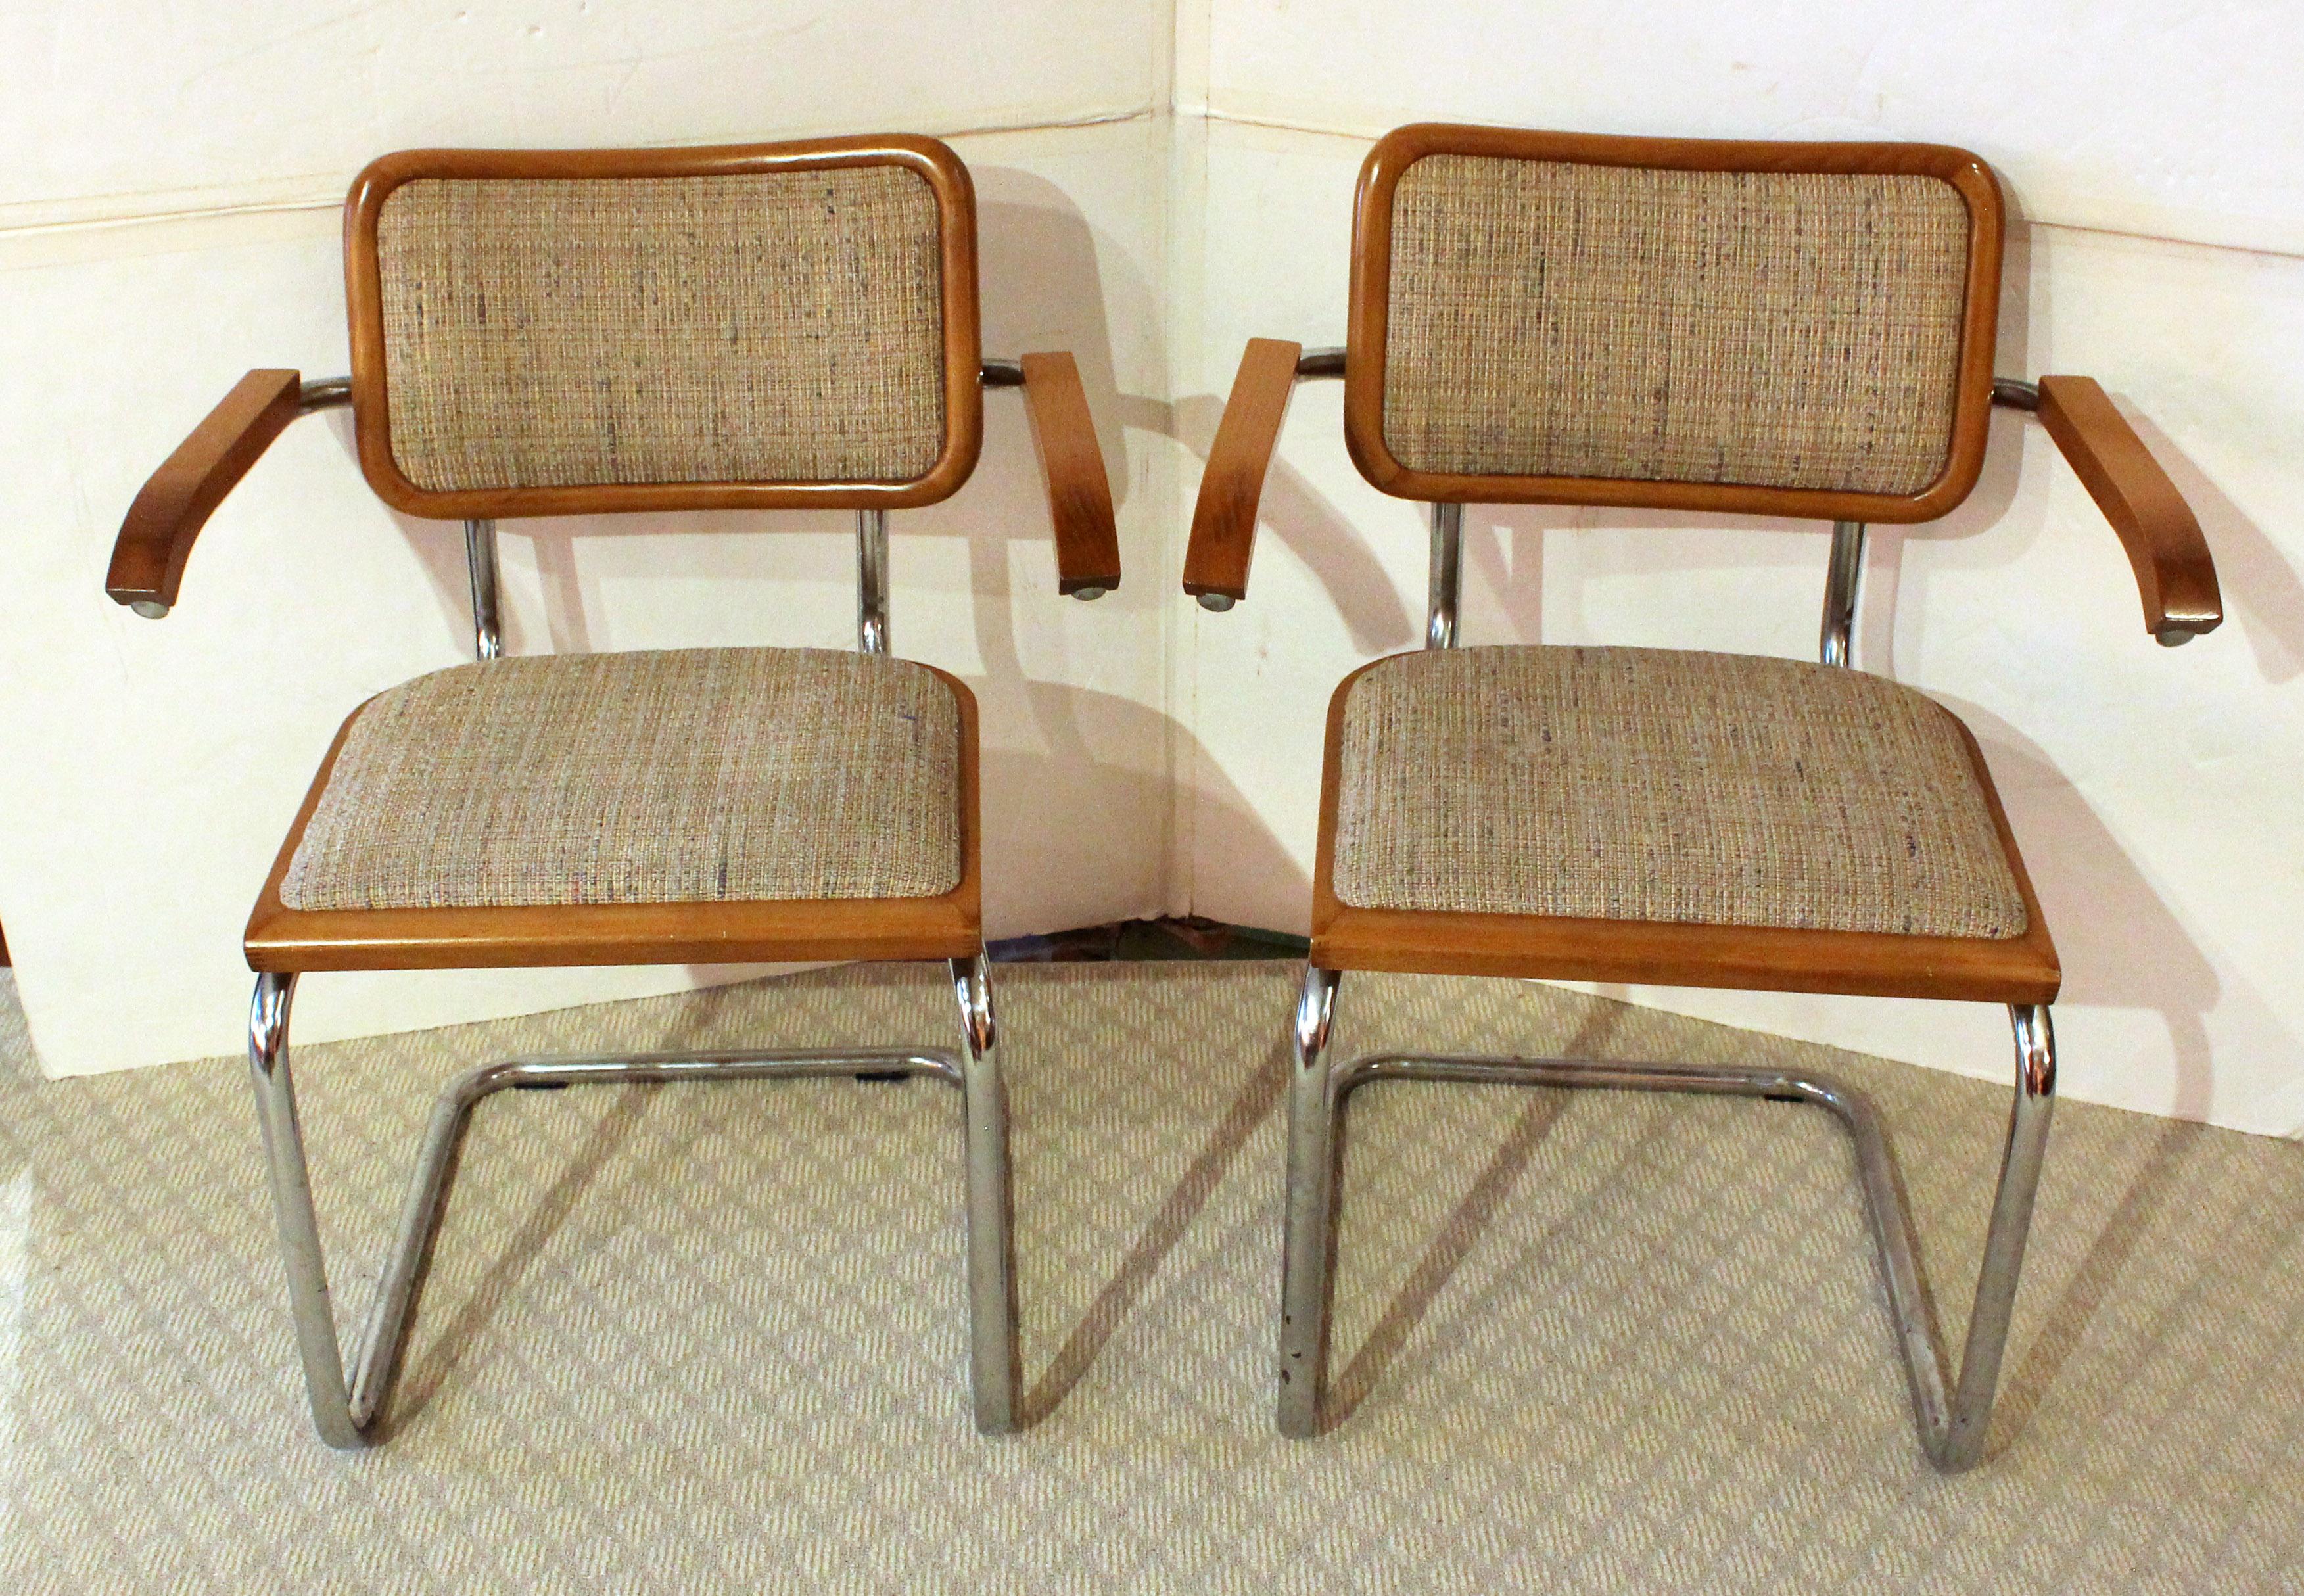 Marcel Breuer Cesca Armlehnstühle, Mitte der 1970er Jahre, Italien. Diese haben nur einen Besitzer gehabt. Ihnen fehlen die Fußpads und sie sind mit grob gewebtem Stoff im Stil der Zeit gepolstert. Original 